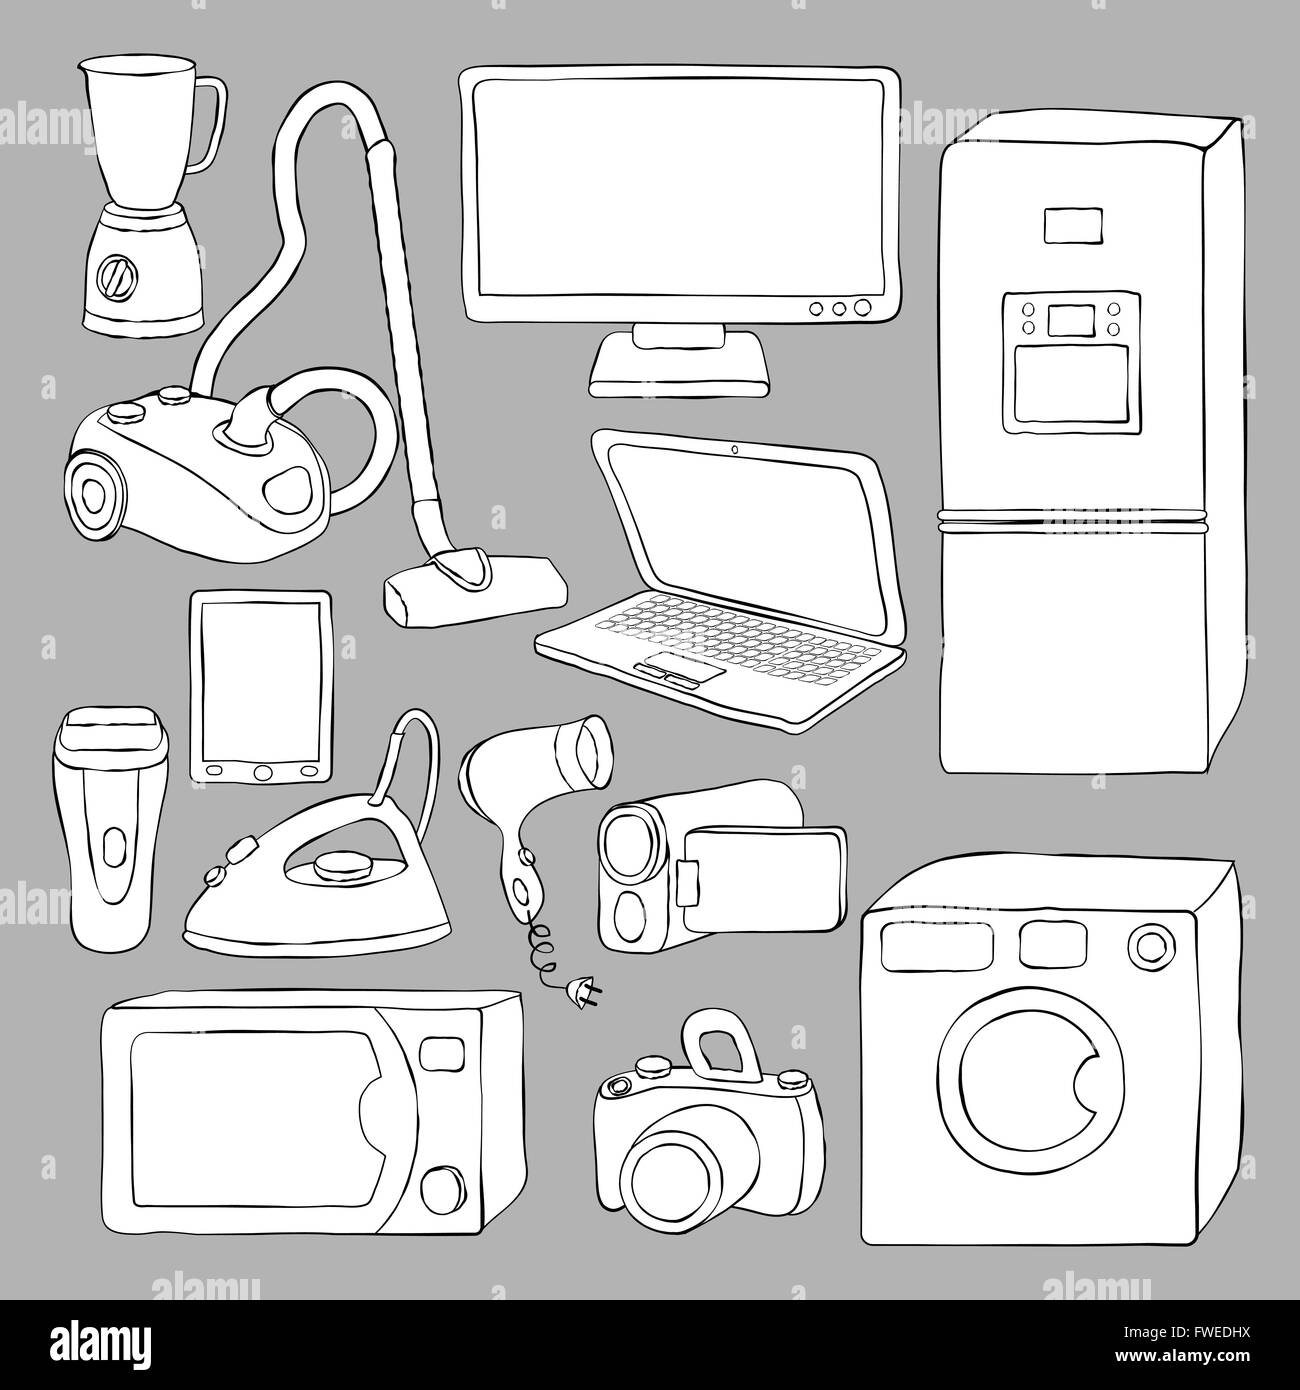 Startseite Haushaltsgeräte und Elektronik Symbole - Vektor-illustration Stock Vektor